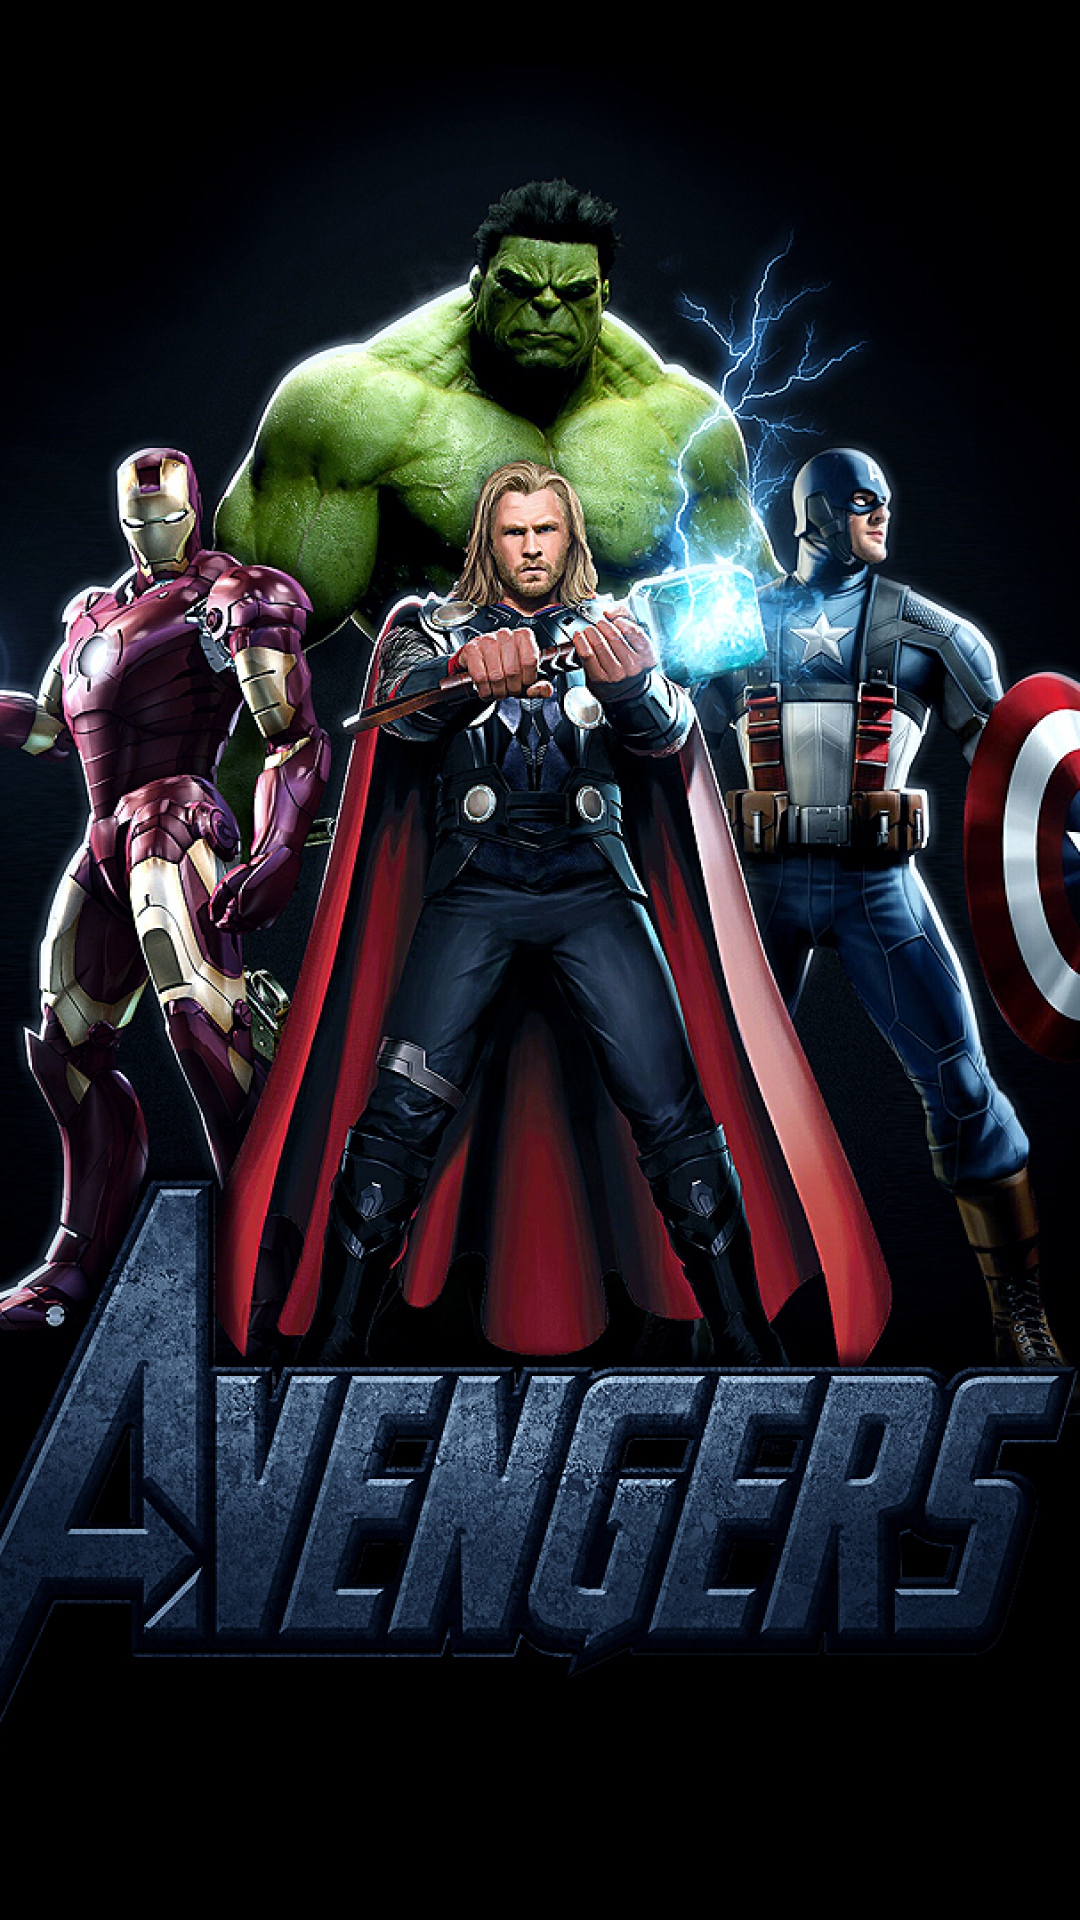 Avengers Endgame Wallpapers  Top Best 4k Avengers Endgame Wallpapers  Download  HD 